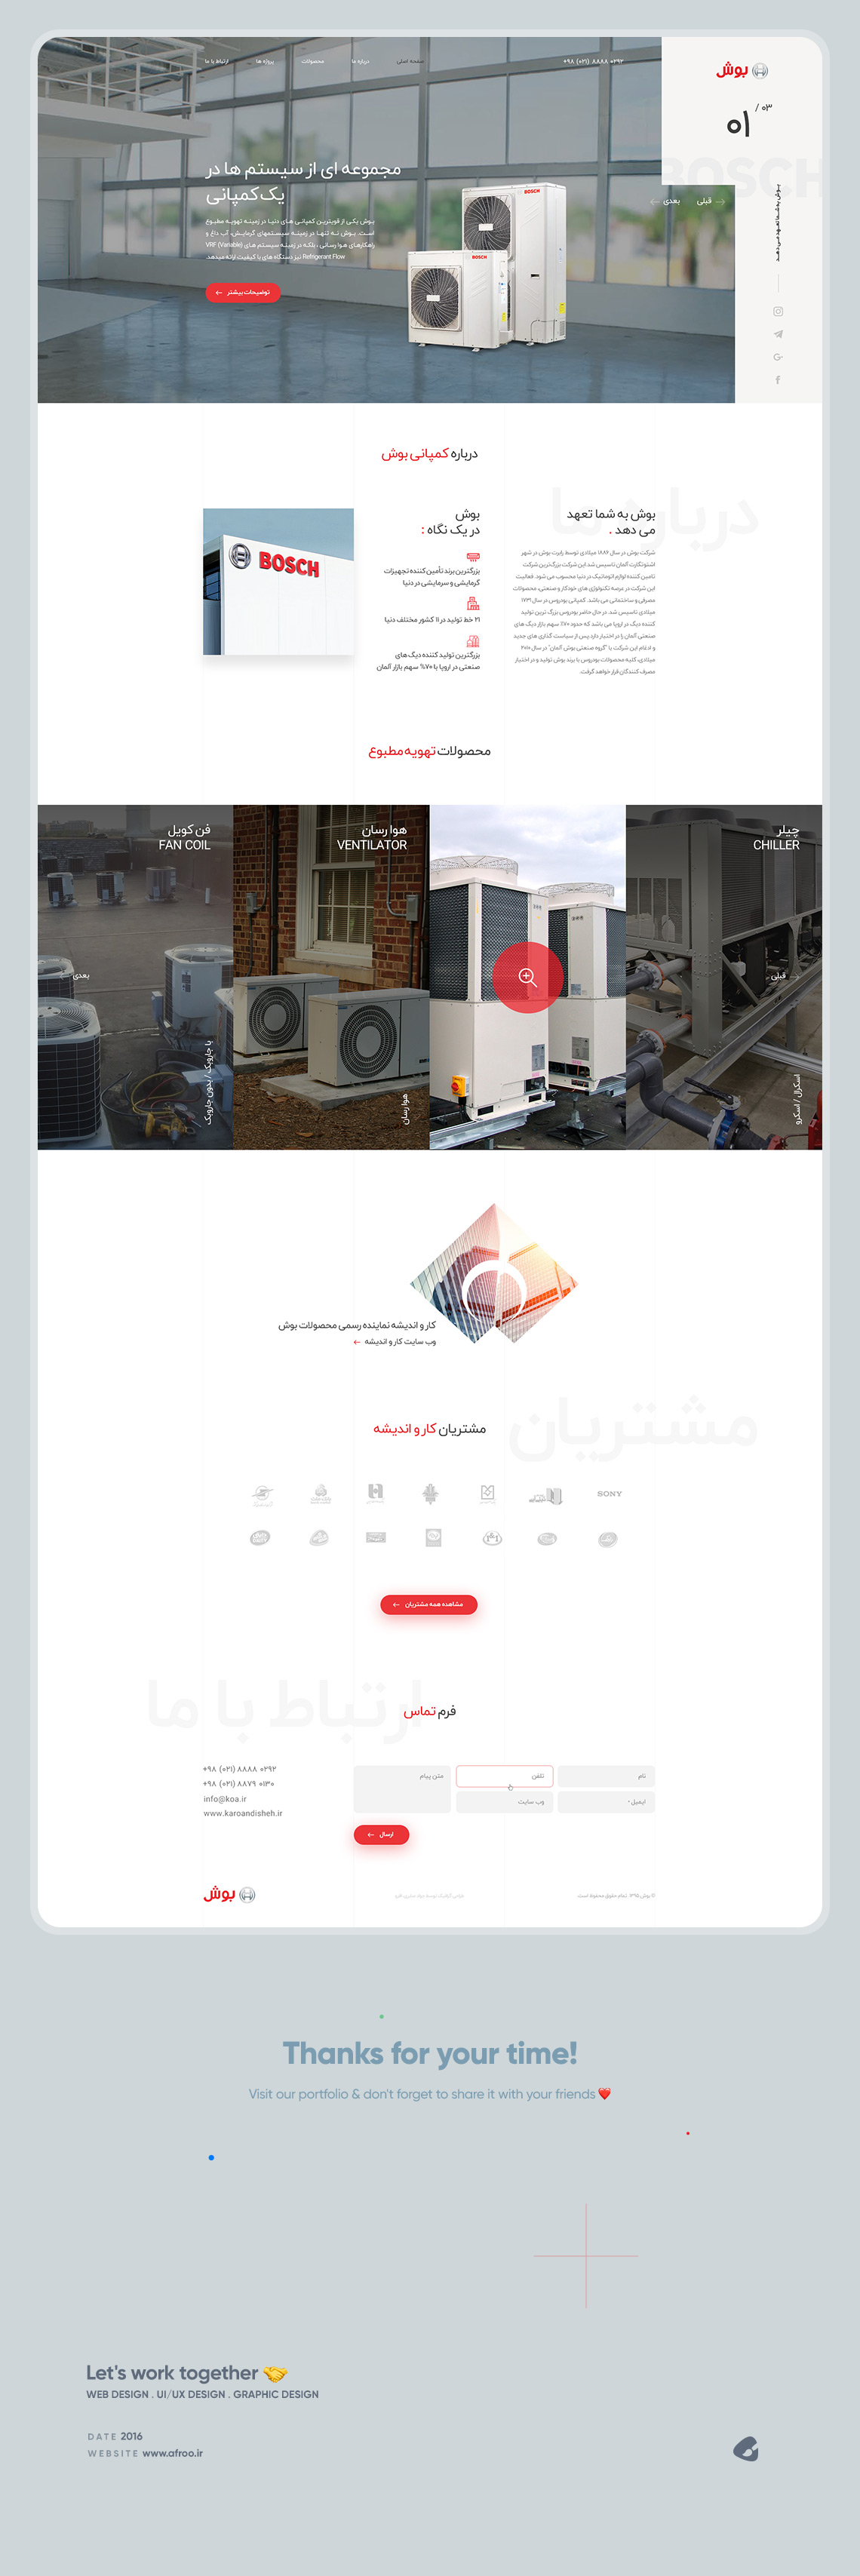 طراحی گرافیک وب، طراحی رابط کاربری و تجربی وب سایت بوش در ایران، شرکت کار و اندیشه